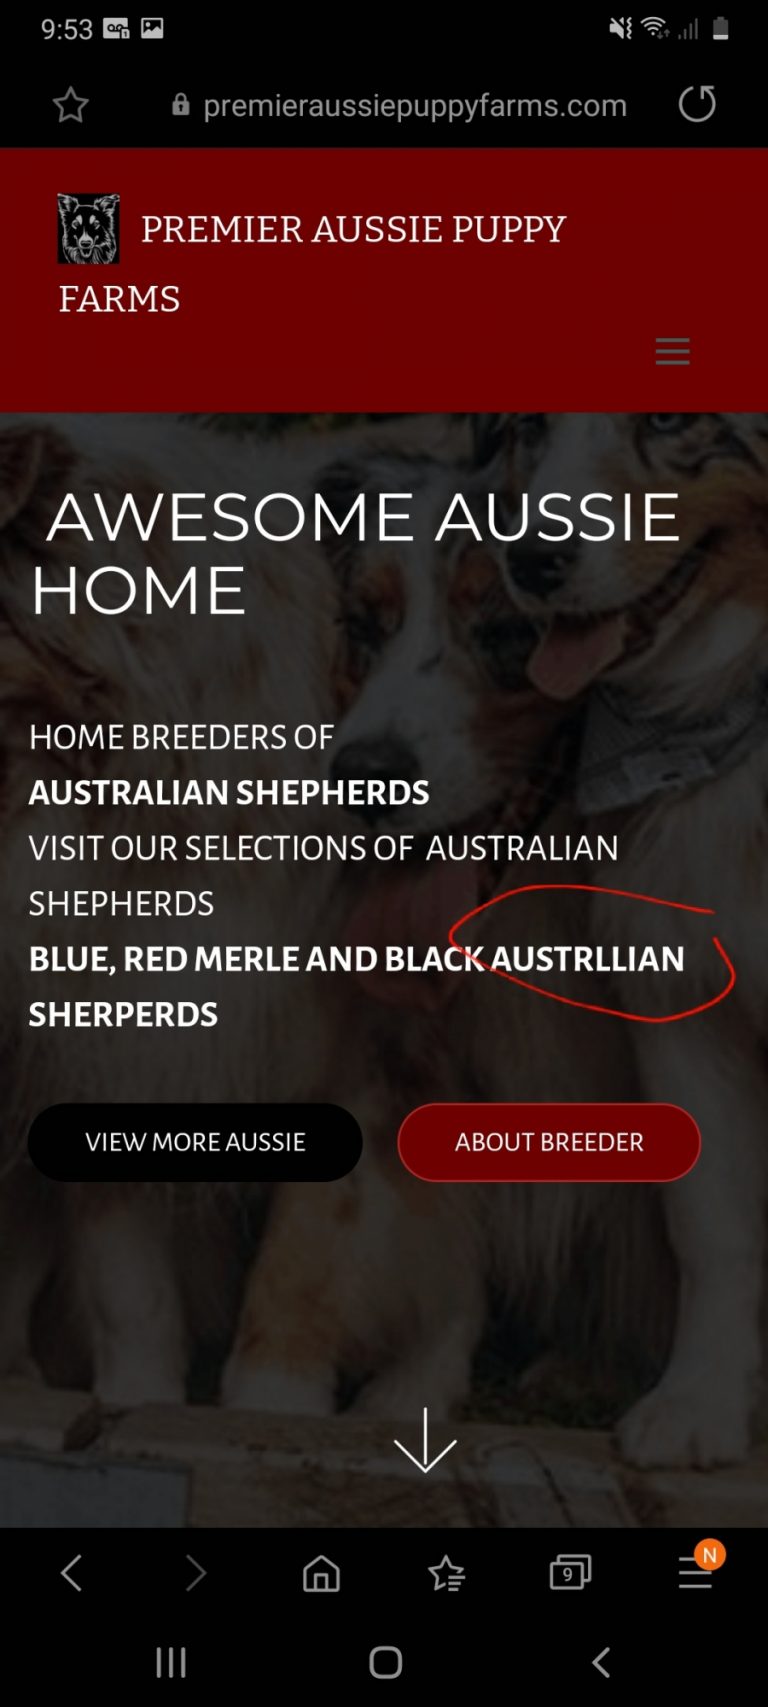 Premier Aussie Puppy Farm